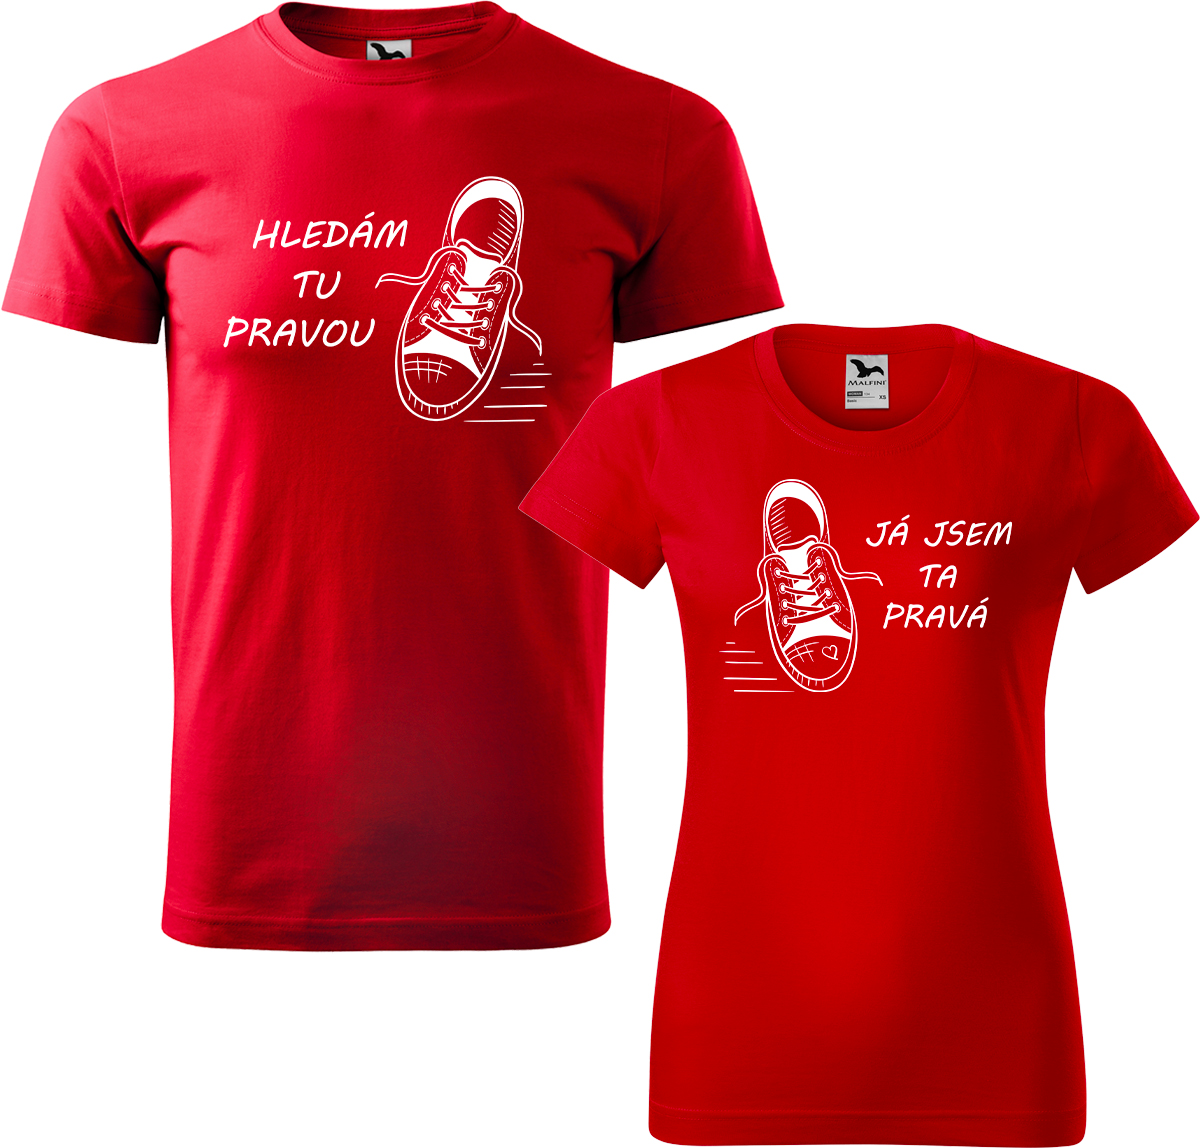 Trička pro páry - Kecky Barva: Červená (07), Velikost dámské tričko: S, Velikost pánské tričko: S